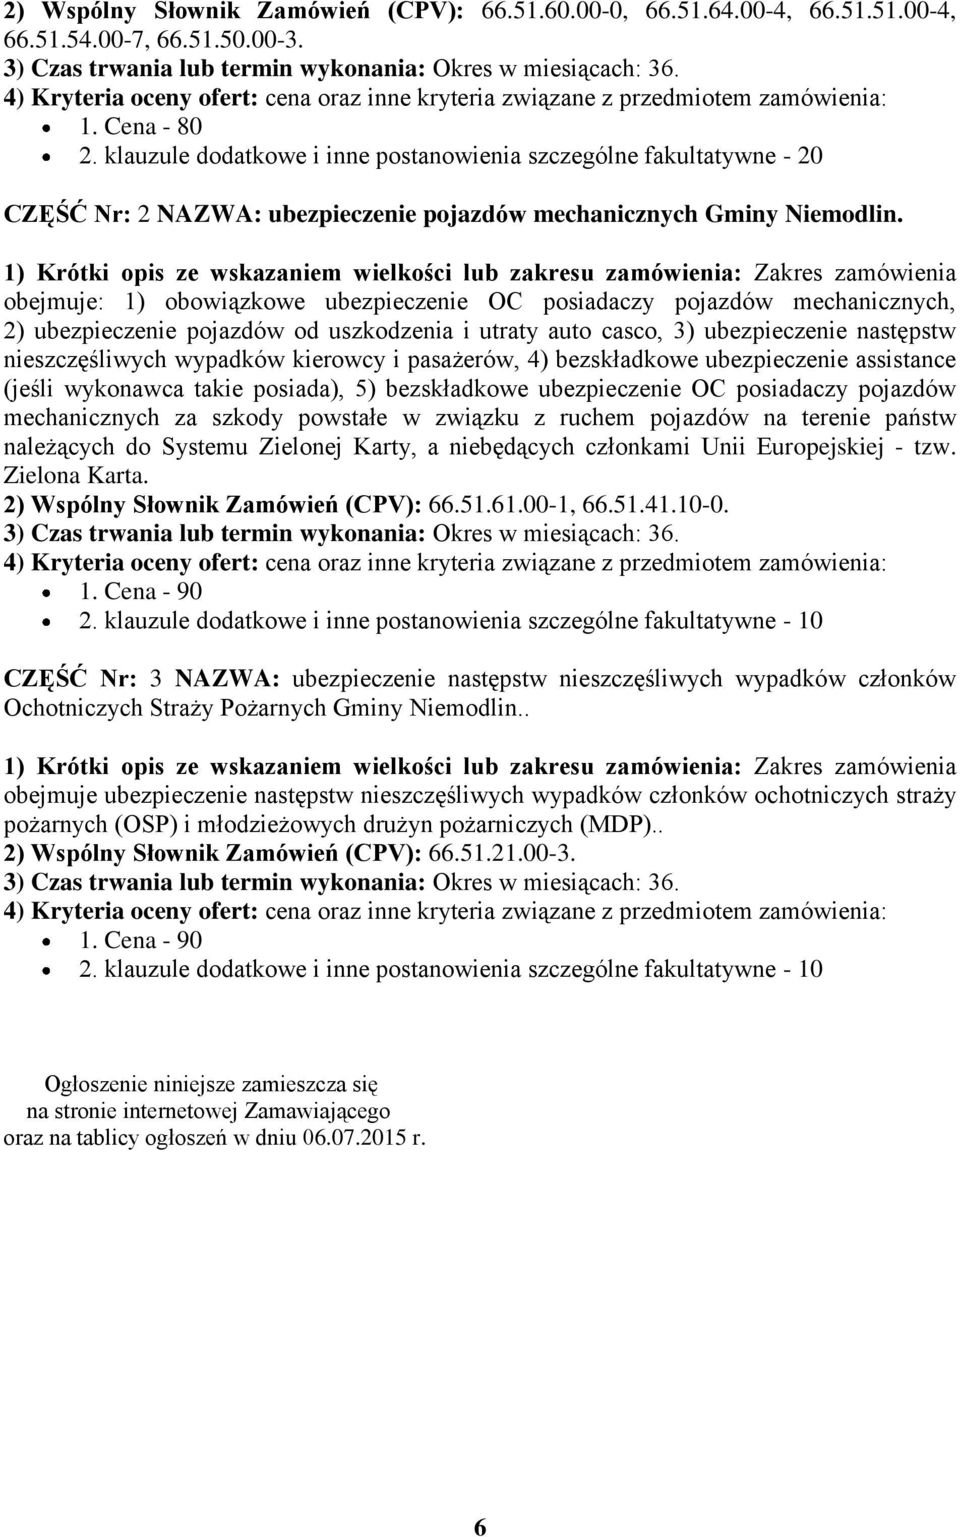 klauzule dodatkowe i inne postanowienia szczególne fakultatywne - 20 CZĘŚĆ Nr: 2 NAZWA: ubezpieczenie pojazdów mechanicznych Gminy Niemodlin.